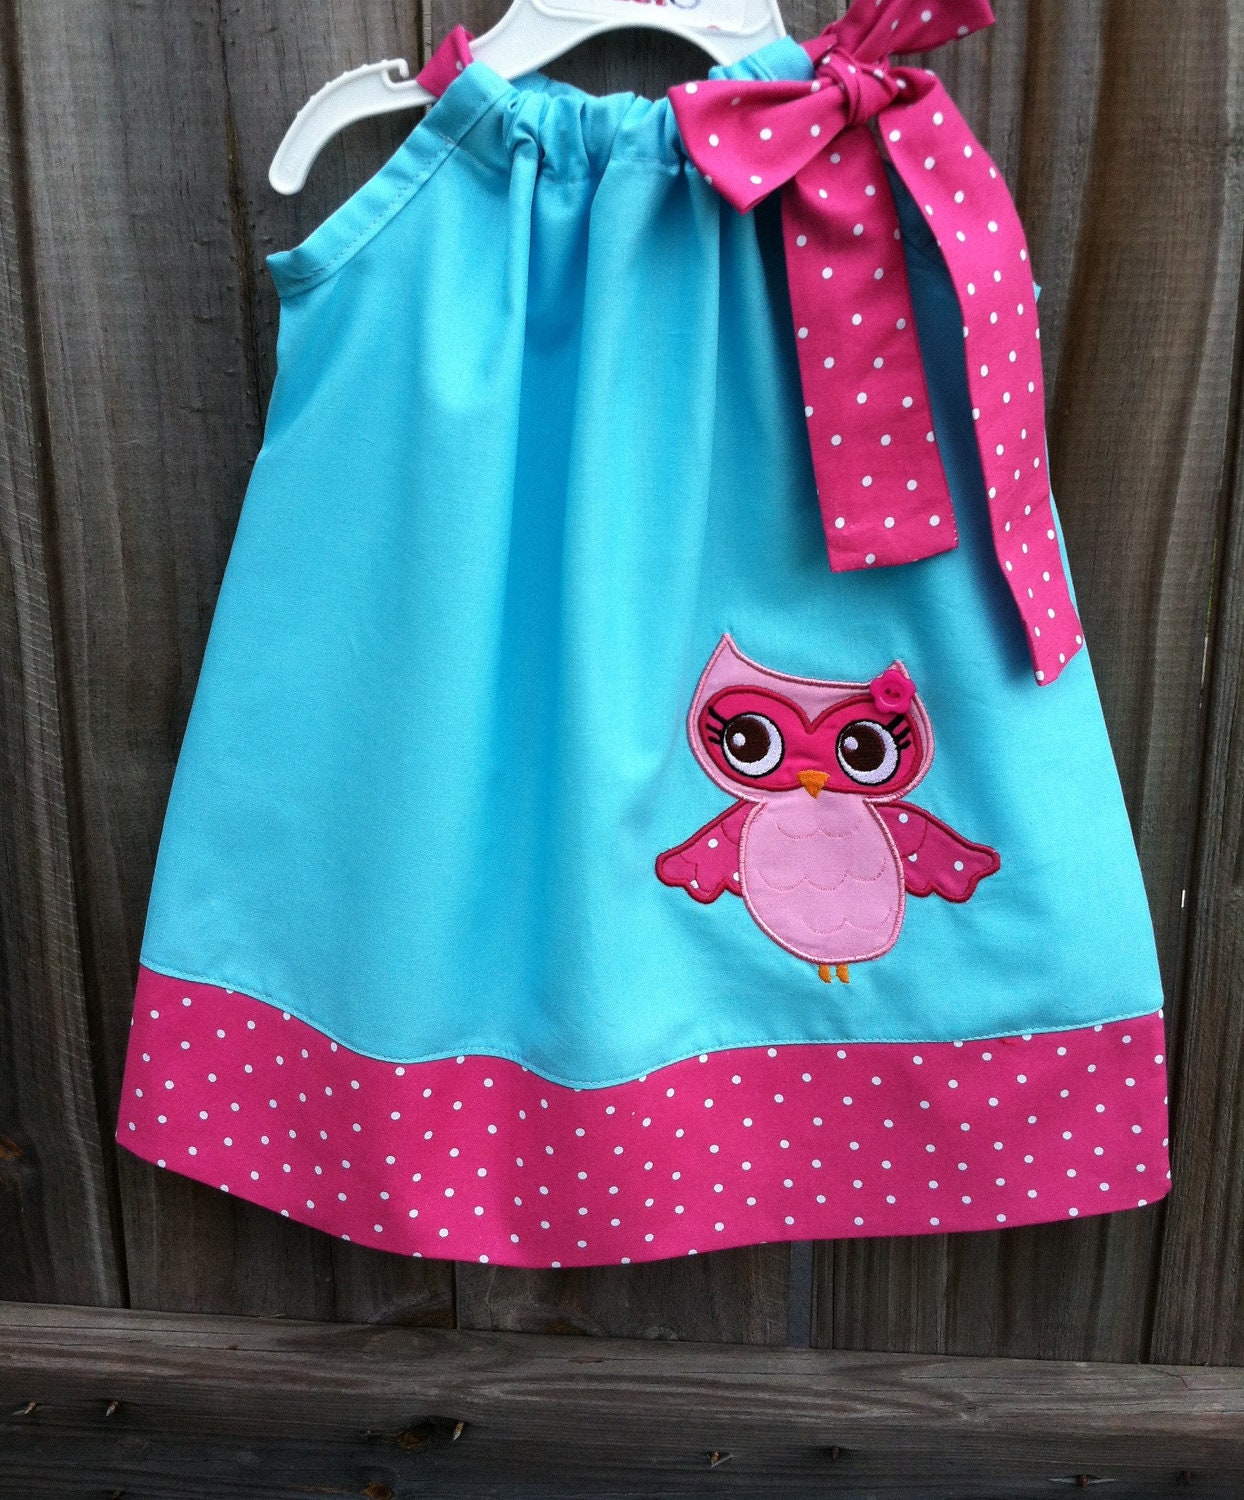 Adorable Owl  girl pillowcase dress